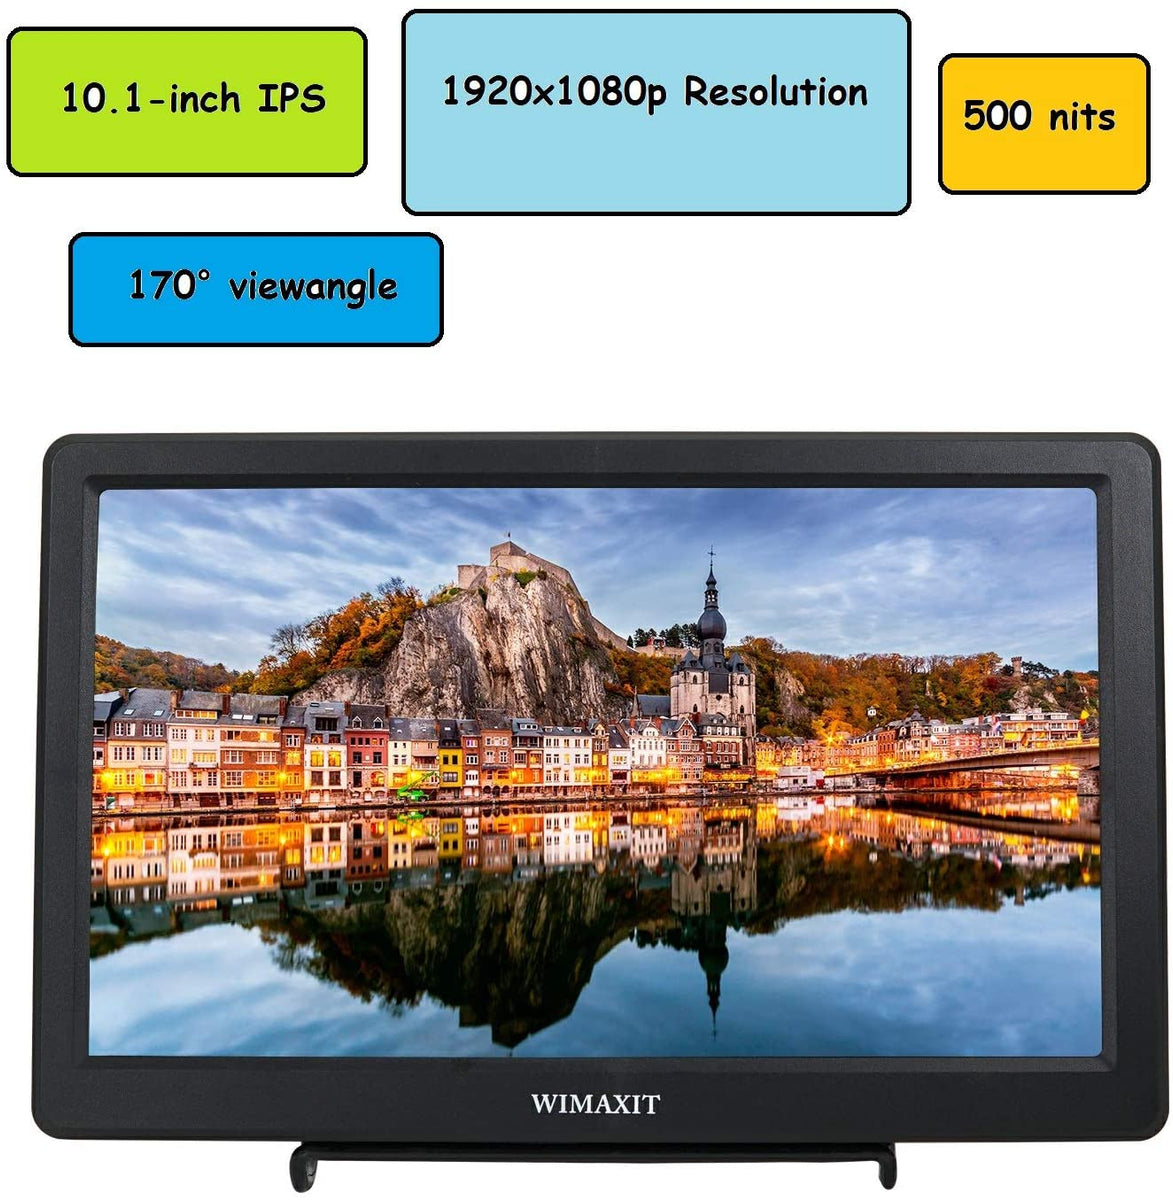 WIMAXIT M1020 10inch HDMI VGA 1920x1080 Resolution Monitor 